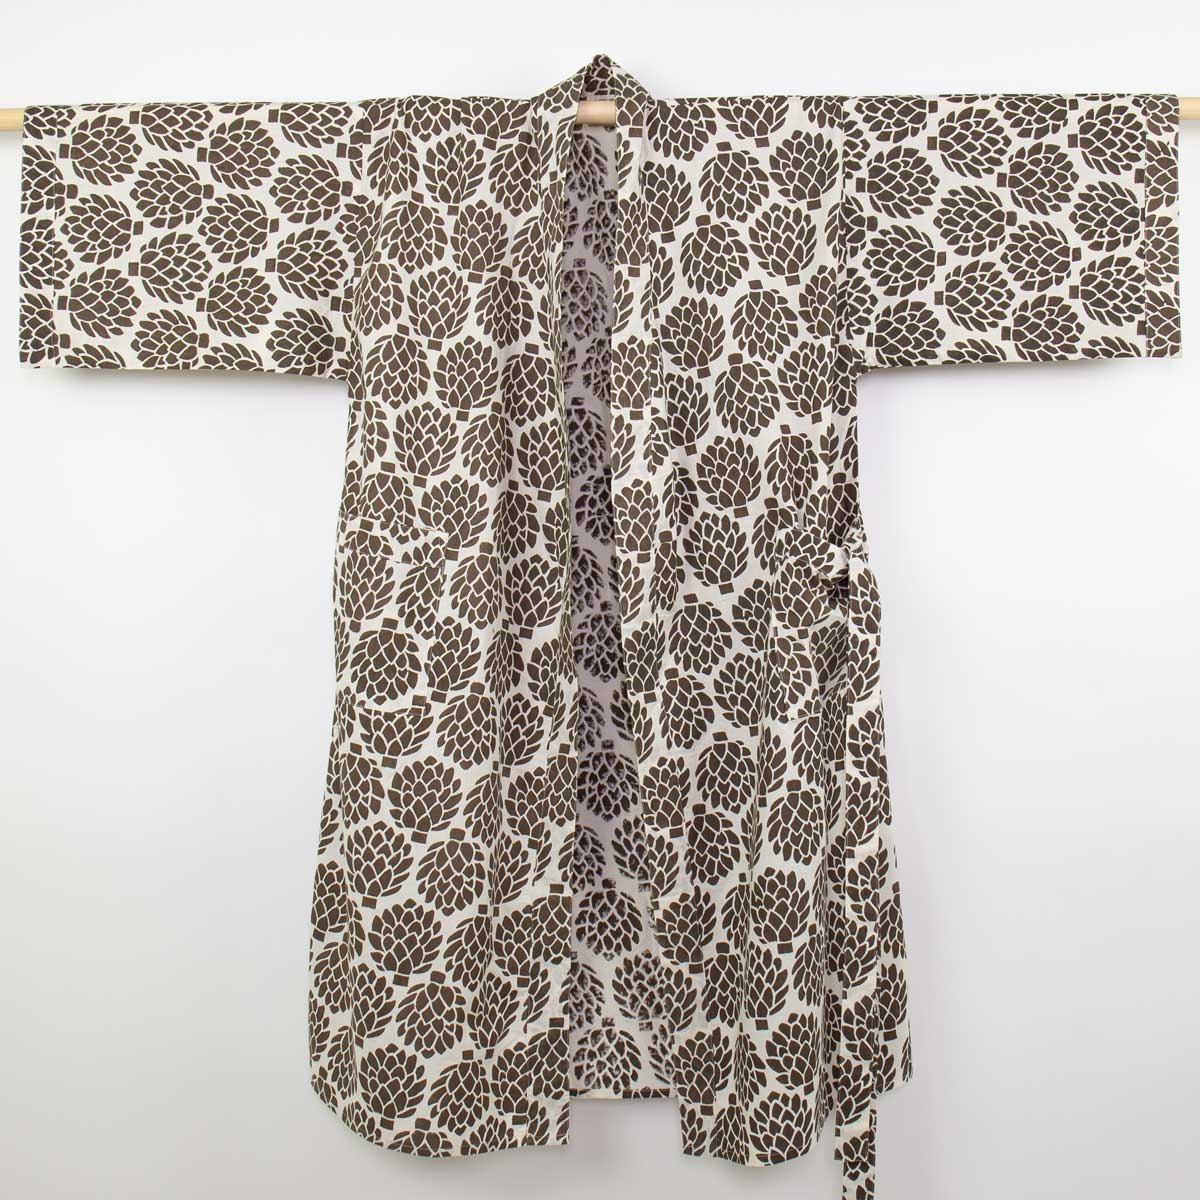 ARTICHOKE Kimono one size, white/brown